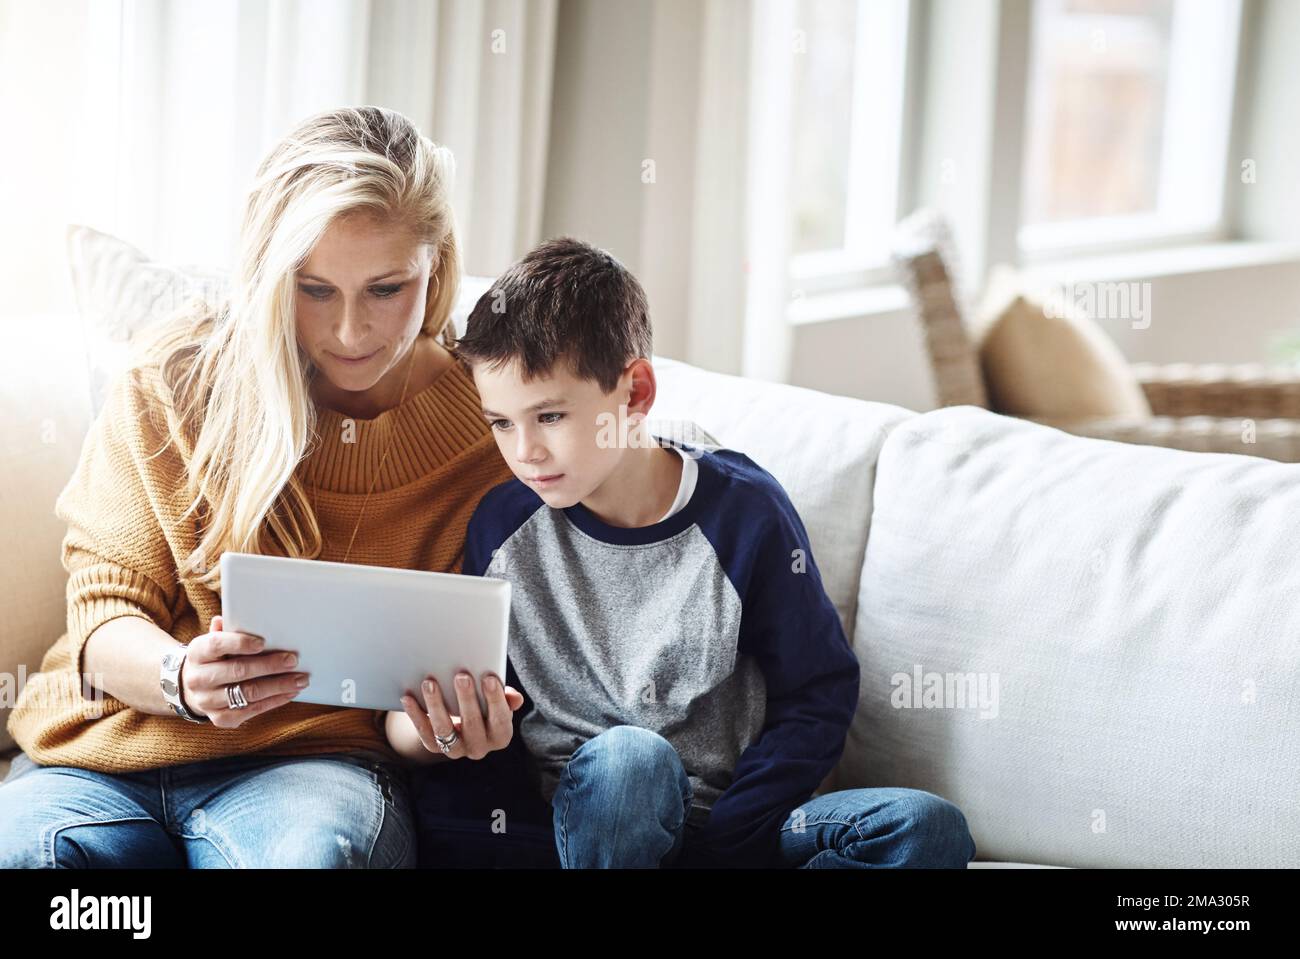 Tablet, Liebe und Mutter mit dem Jungen auf dem Sofa, schöne Zeit und Entspannung am gemeinsamen Wochenende. Familienheim, Lifestyle und mutter und Kind mit digitaler Technologie Stockfoto